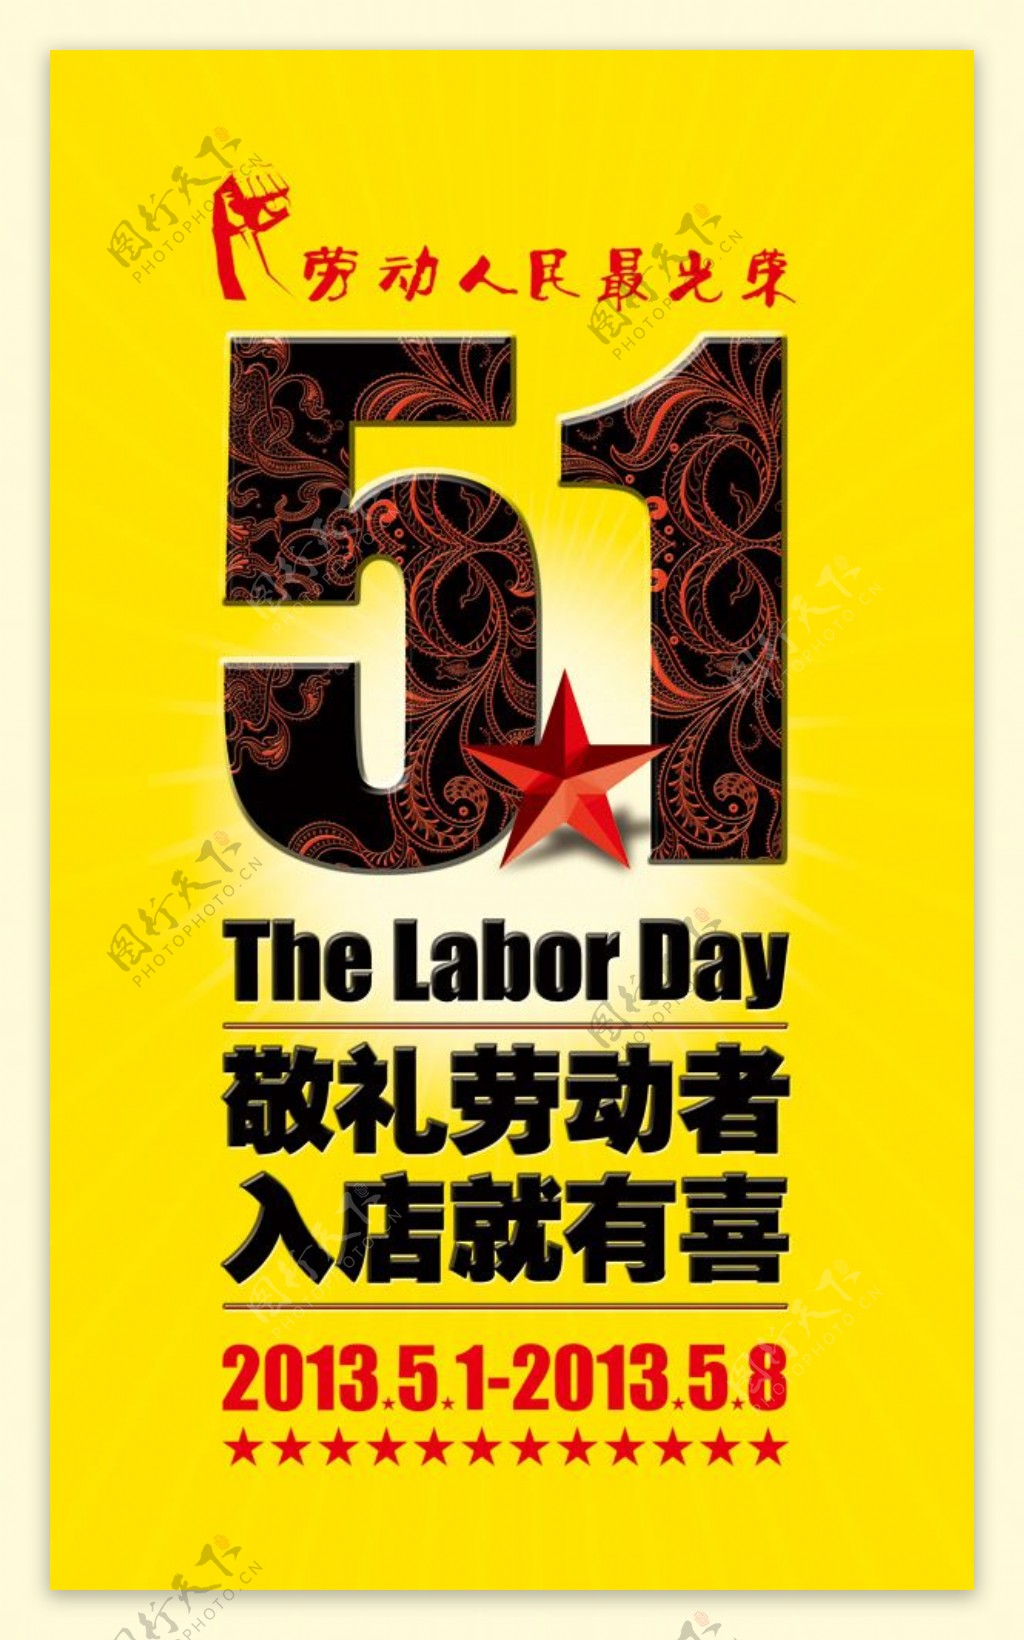 五一劳动节促销海报设计PSD素材下载